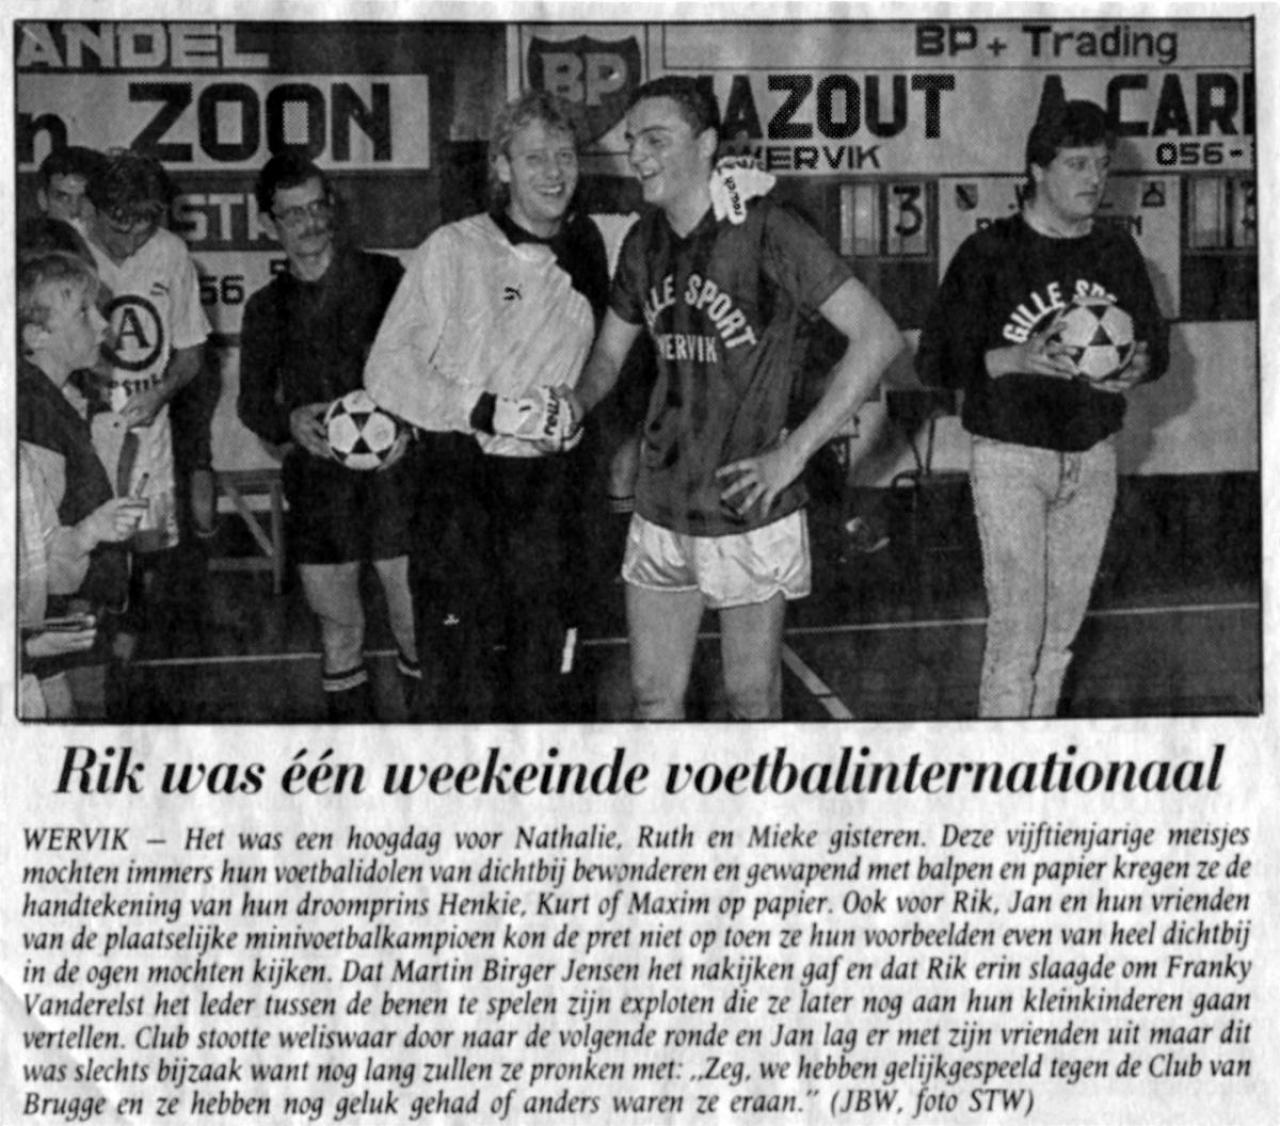 Verslag van de legendarische match waarbij Rik Masil Franky Van der Elst door de benen speelde.